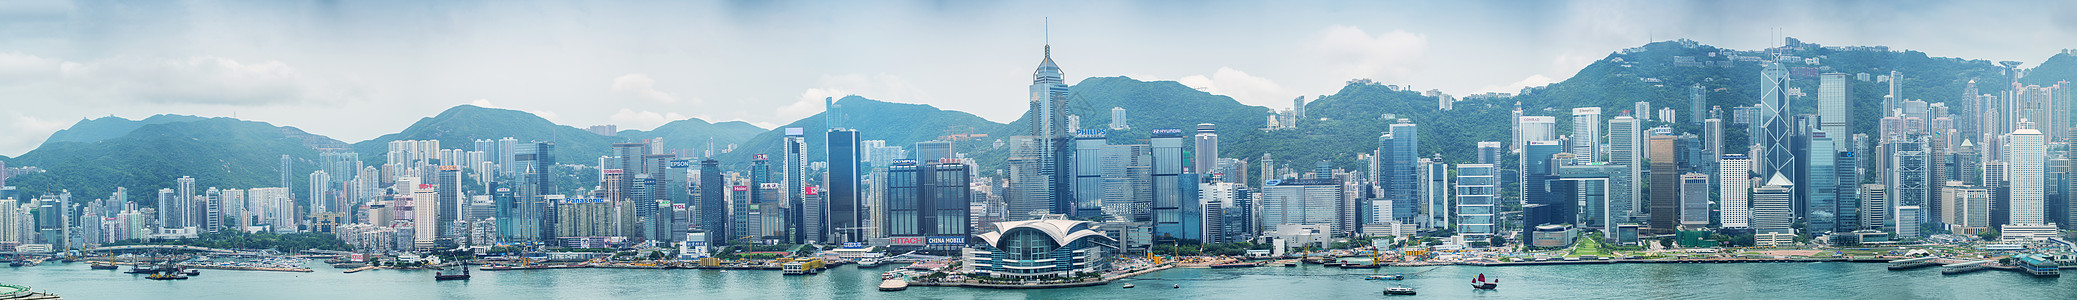 香港2014年5月12日 震撼香港一全景金融中心办公室地标景观港口商业市中心摩天大楼天空图片